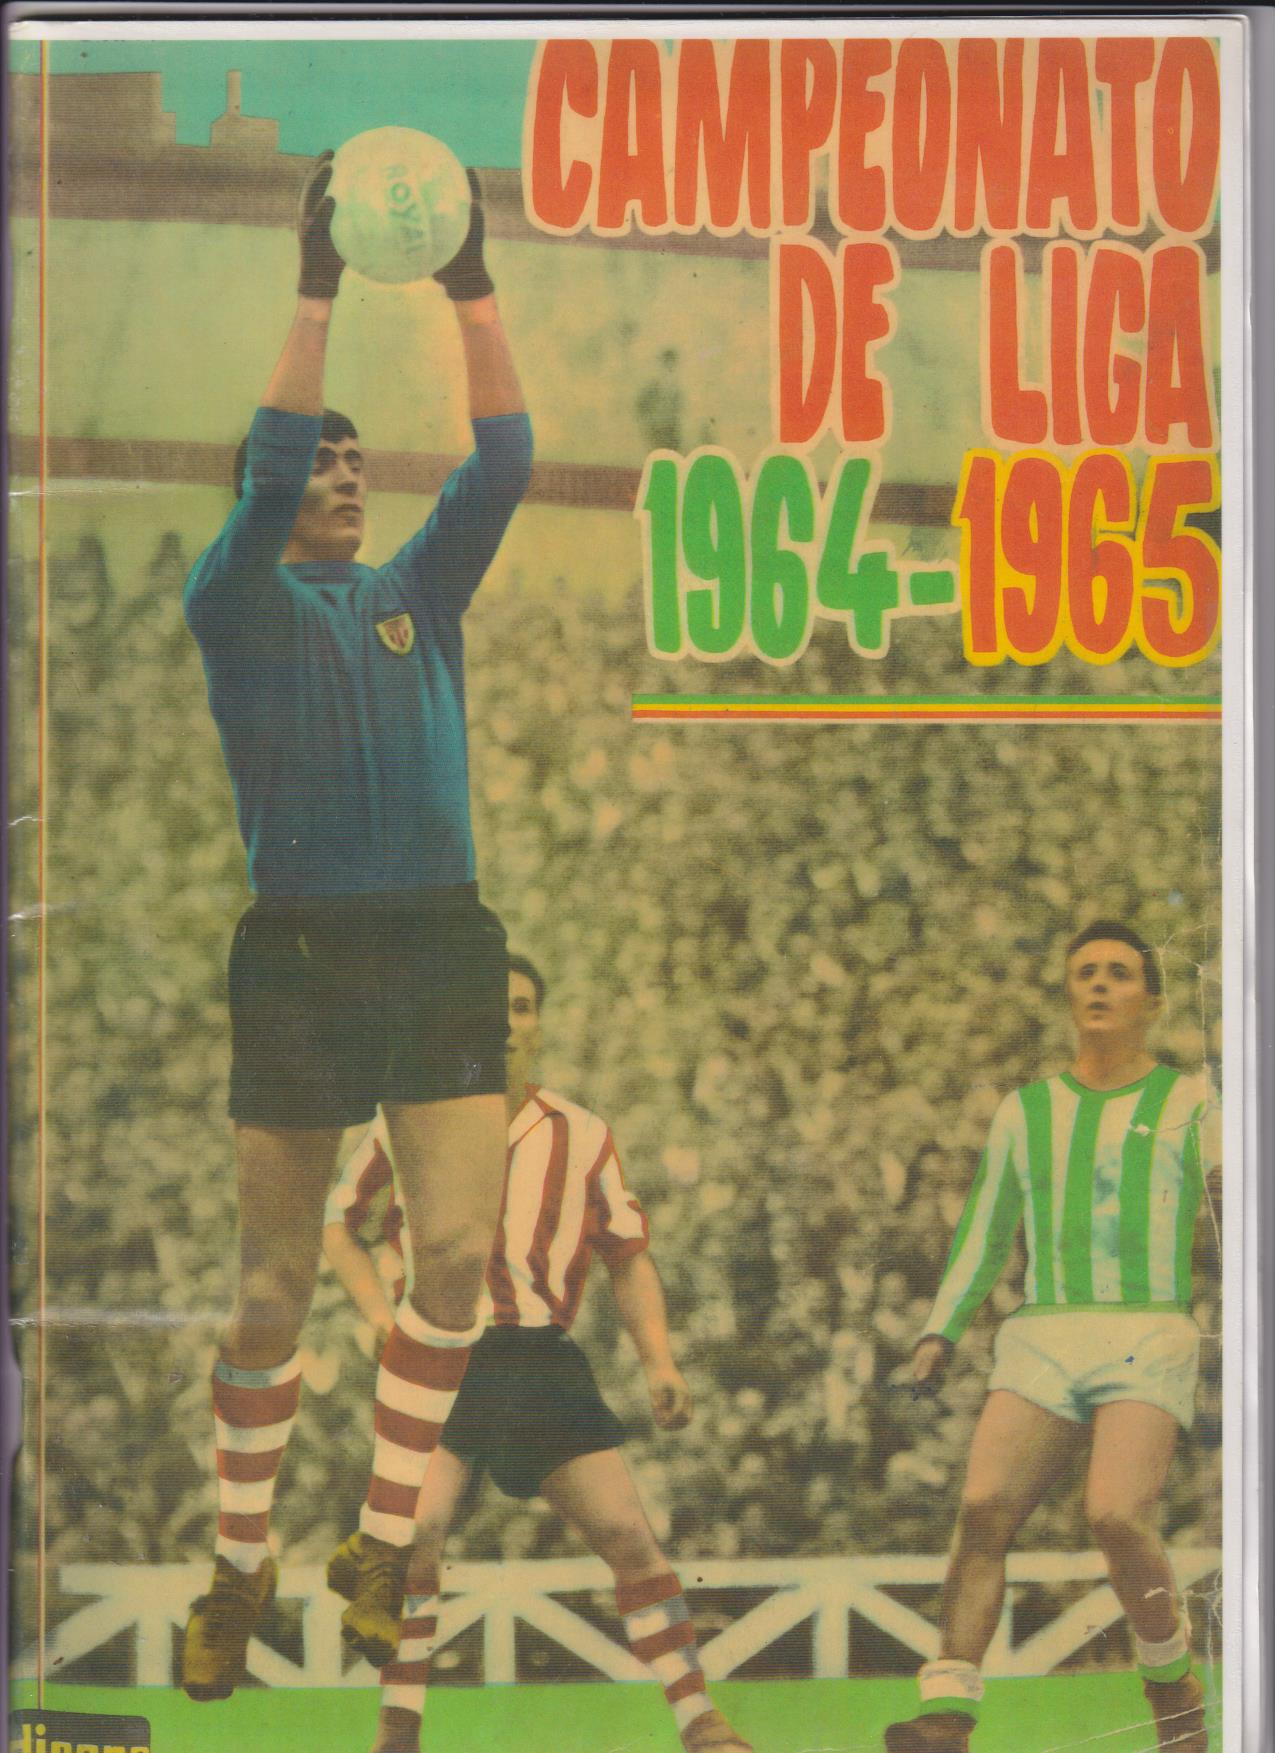 Campeonato de Liga 1968-69. Reproducción con los cromos sueltos, pegados por el margen superior